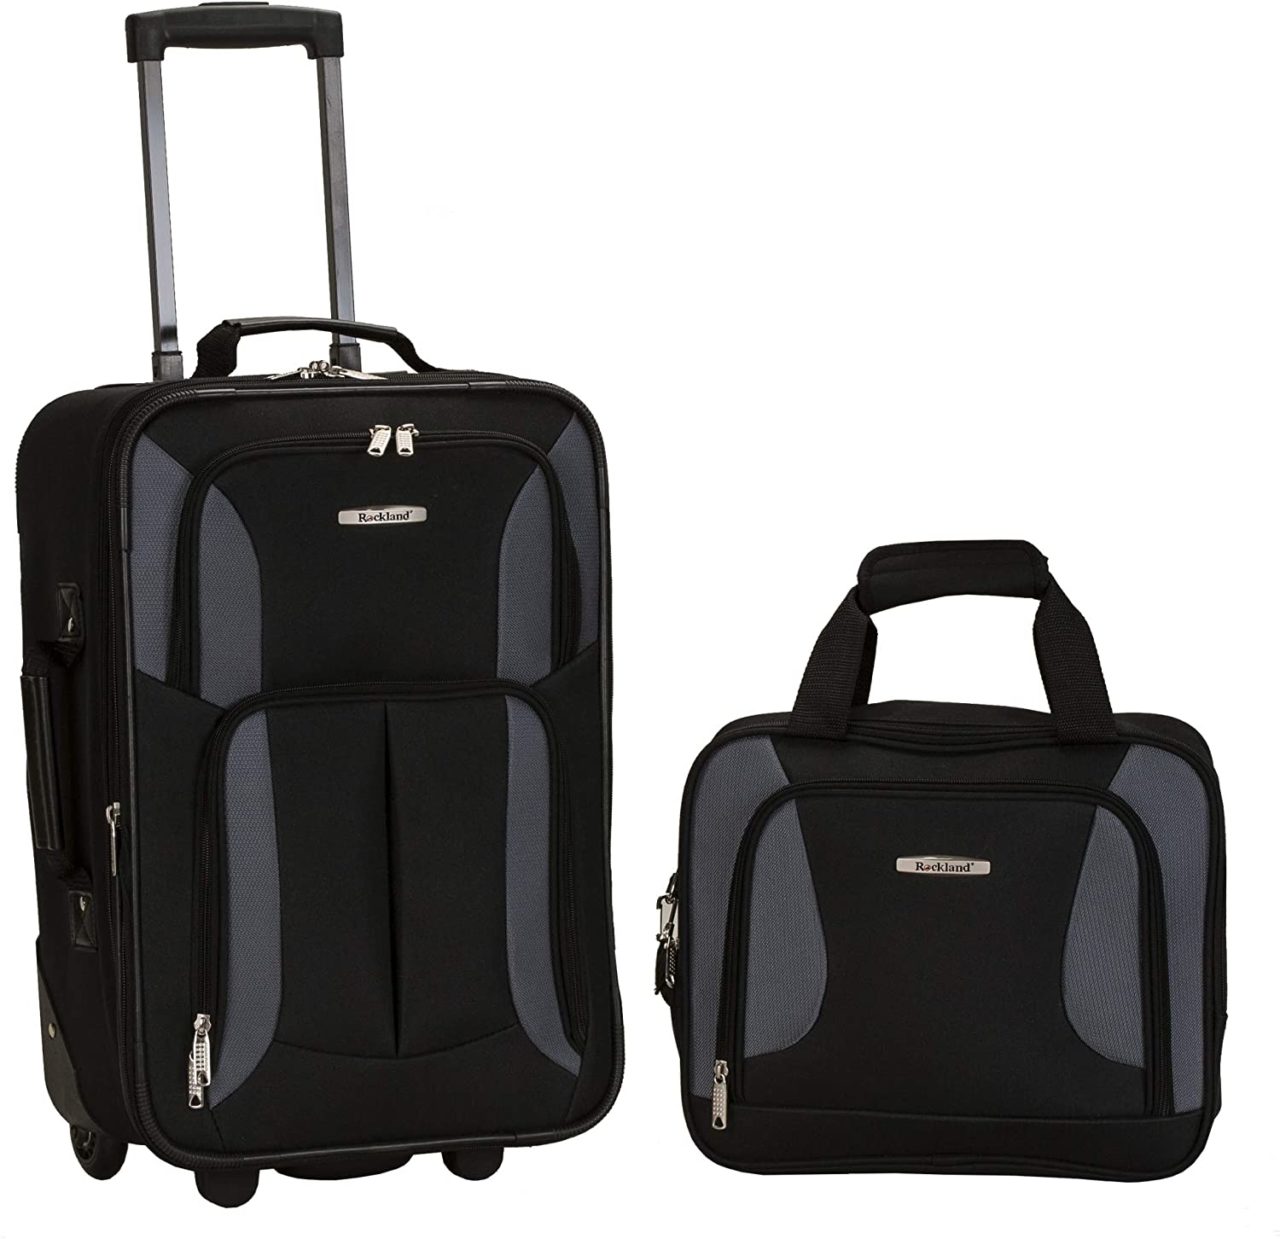 Rockland 2pc Luggage Set